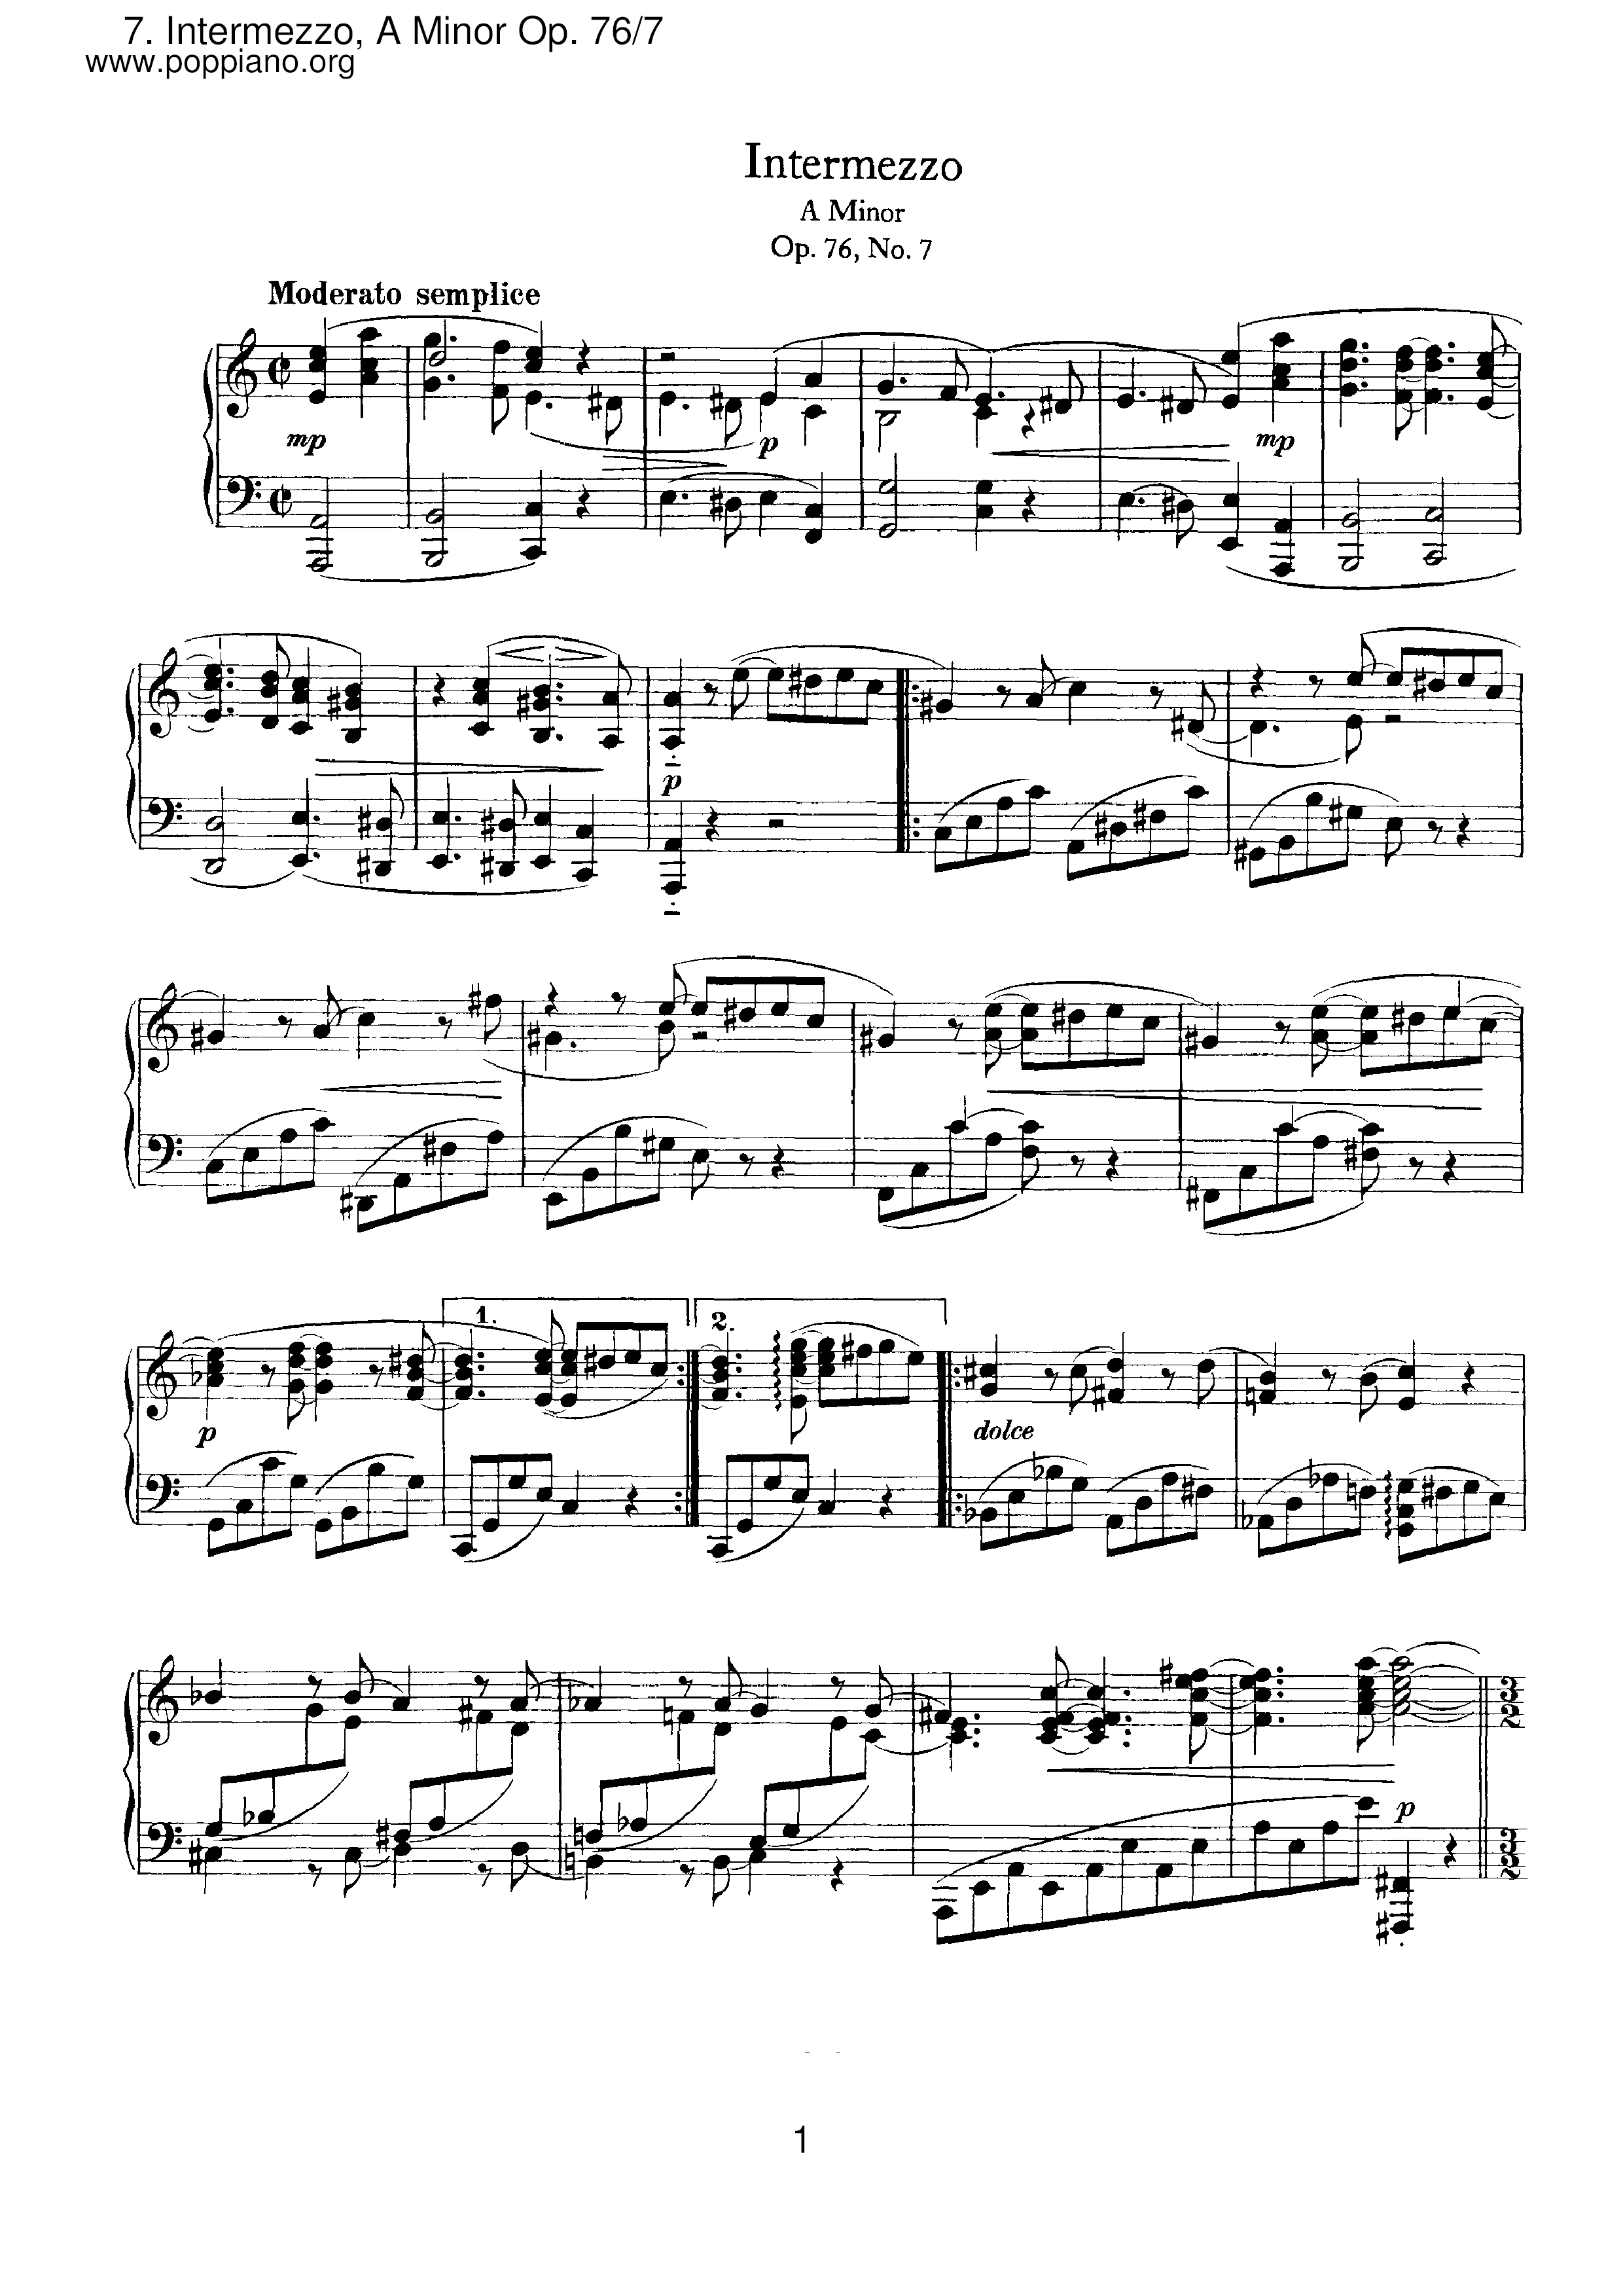 No.7 Intermezzo, A Minor Score